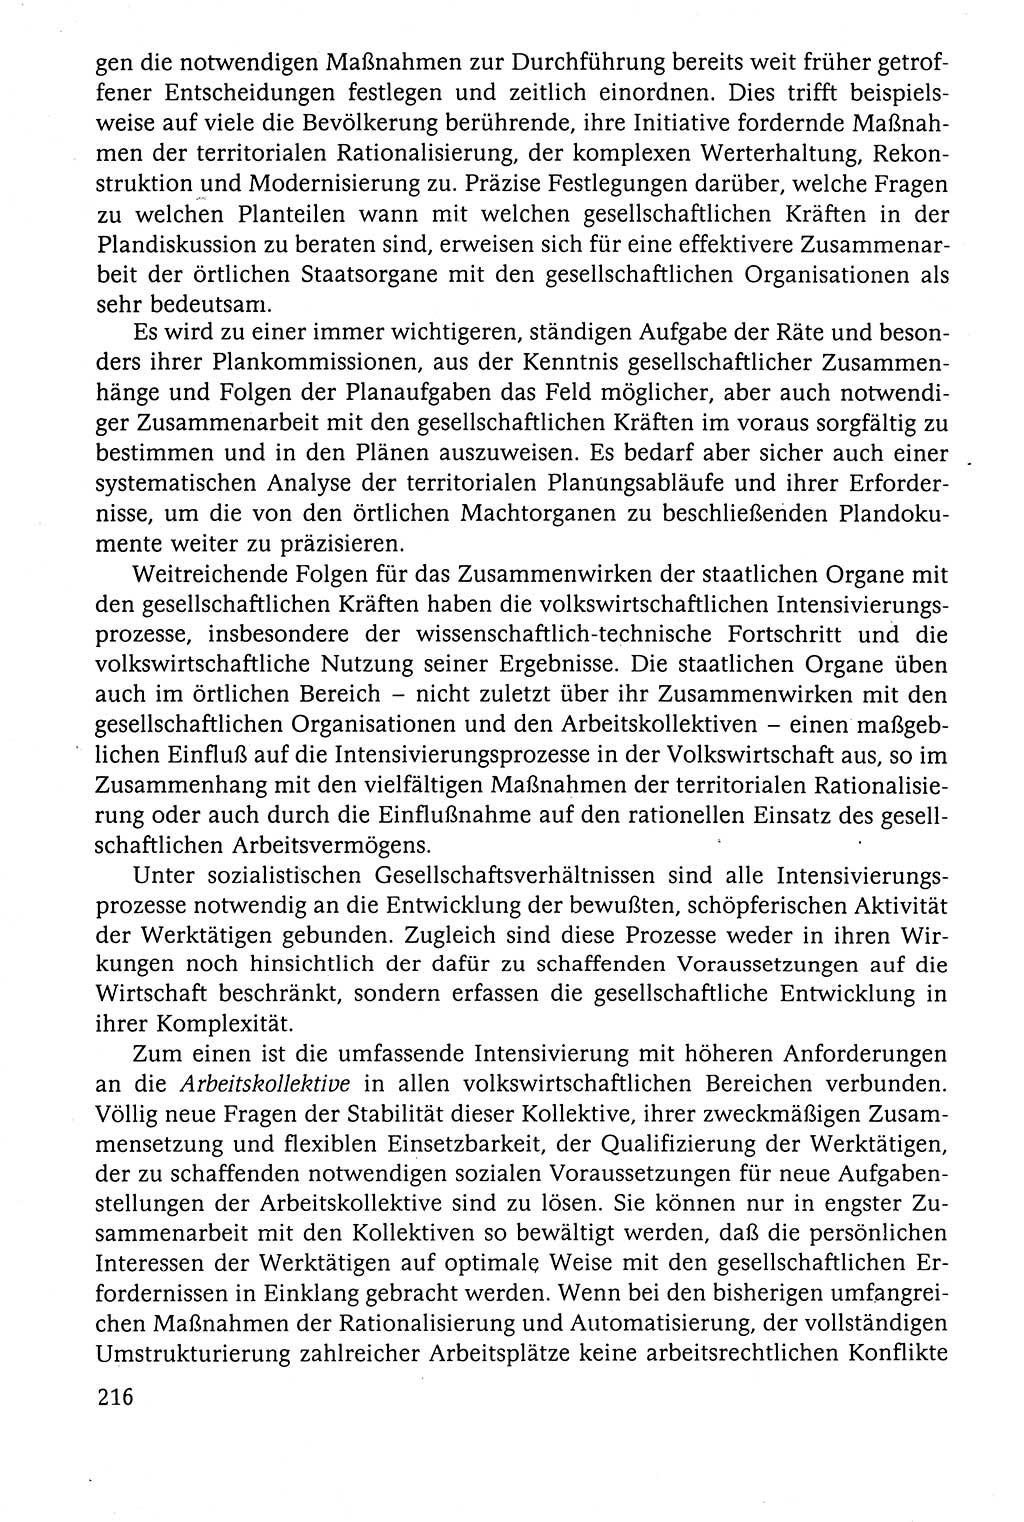 Der Staat im politischen System der DDR (Deutsche Demokratische Republik) 1986, Seite 216 (St. pol. Sys. DDR 1986, S. 216)